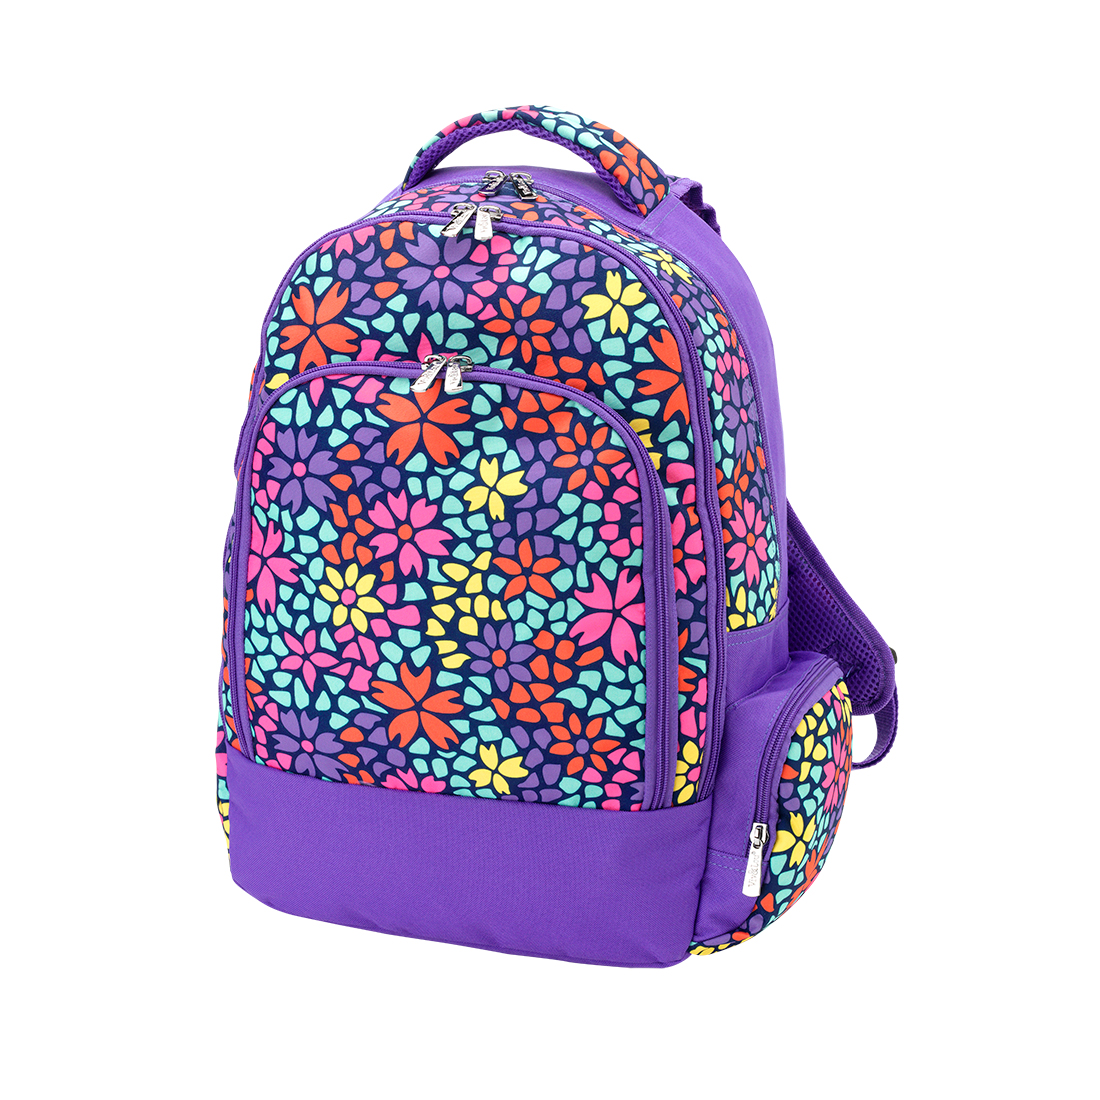 Monogram School Backpack | Personalized Backpacks for Girls | Monogram